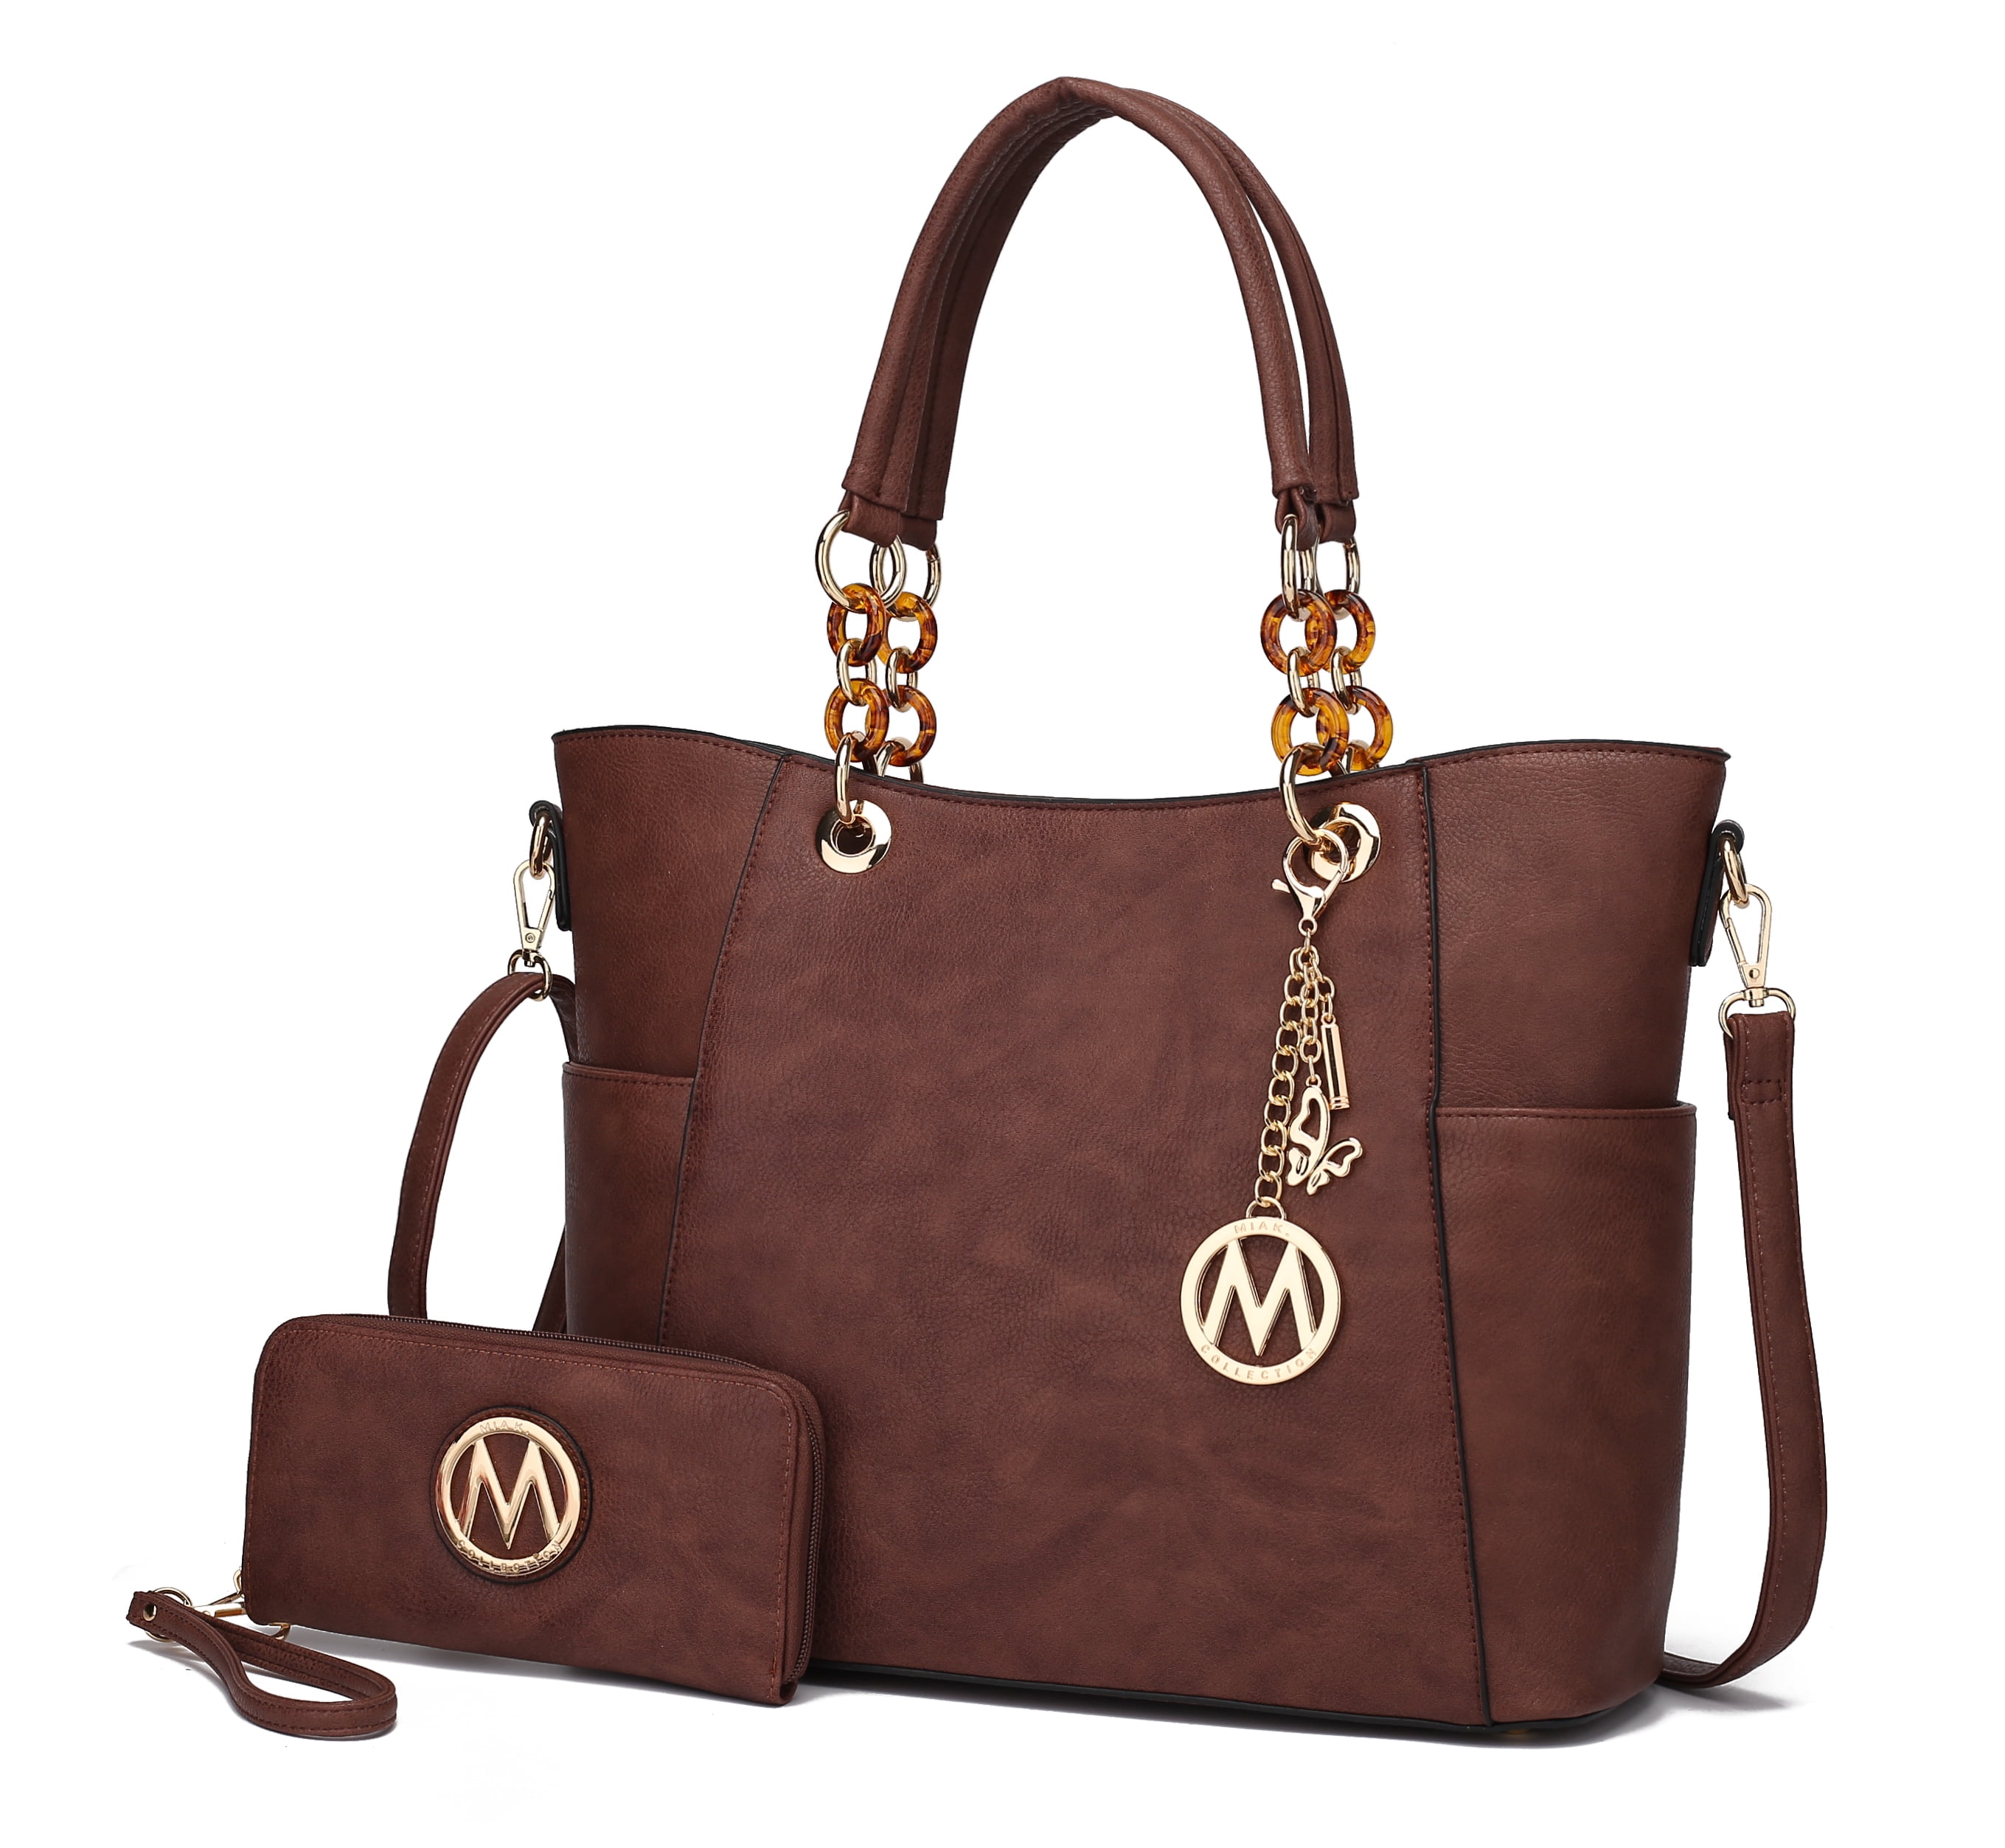 Farrow Eden 3PC Shoulder Tote Bag Business Top-handle Handbags Wallet Purse Set & Wristlet Pouch by Mia K 